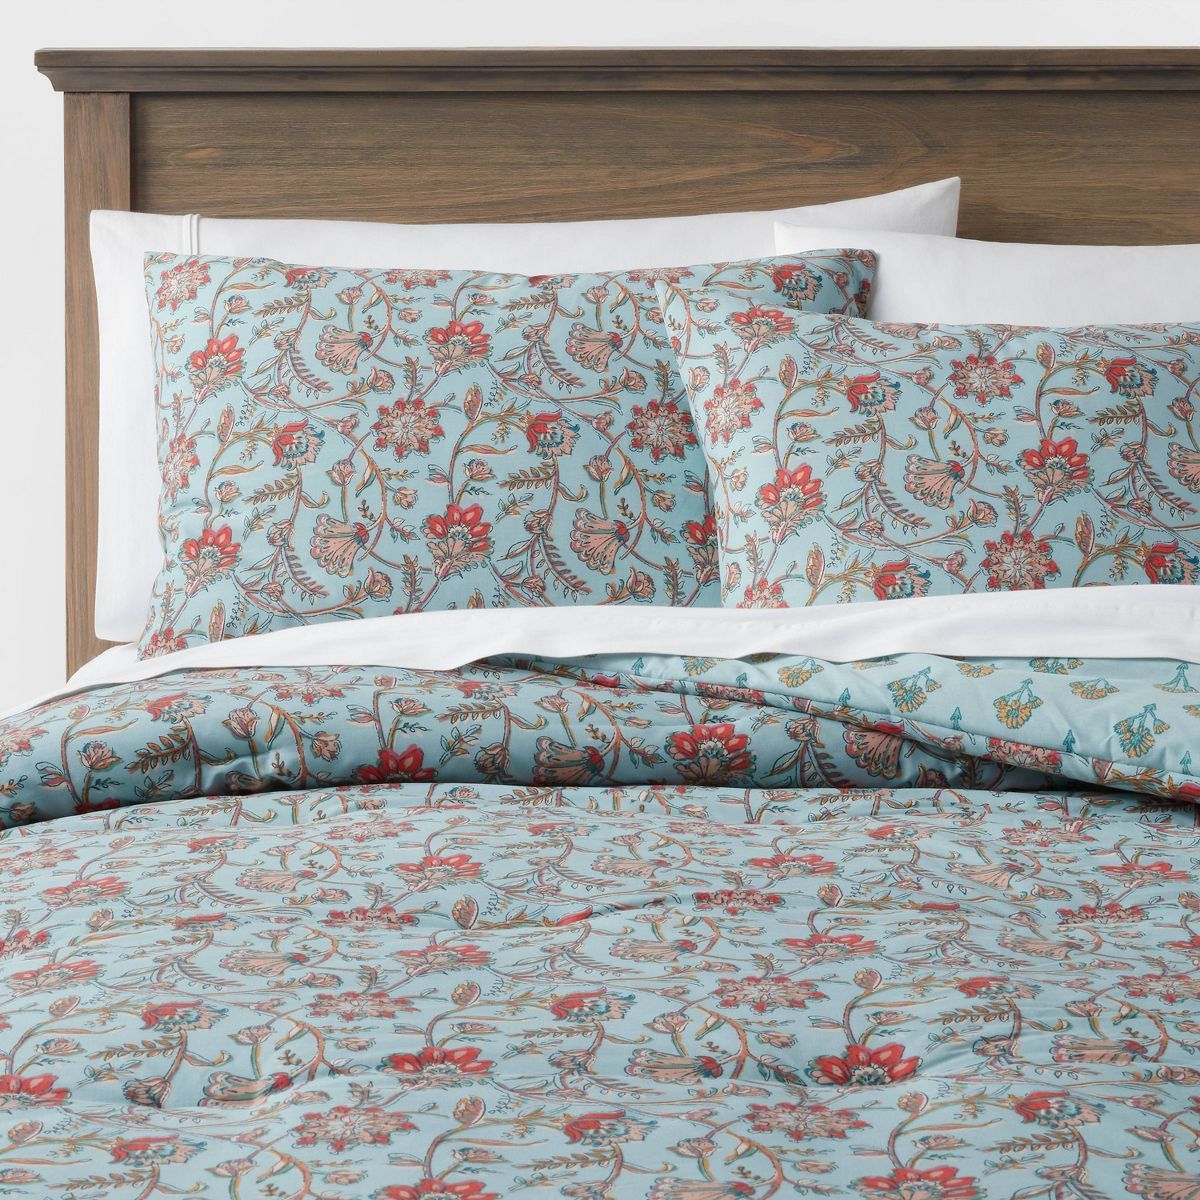 Floral Printed Comforter & Sham Set Light Teal Blue - Threshold™ | Target